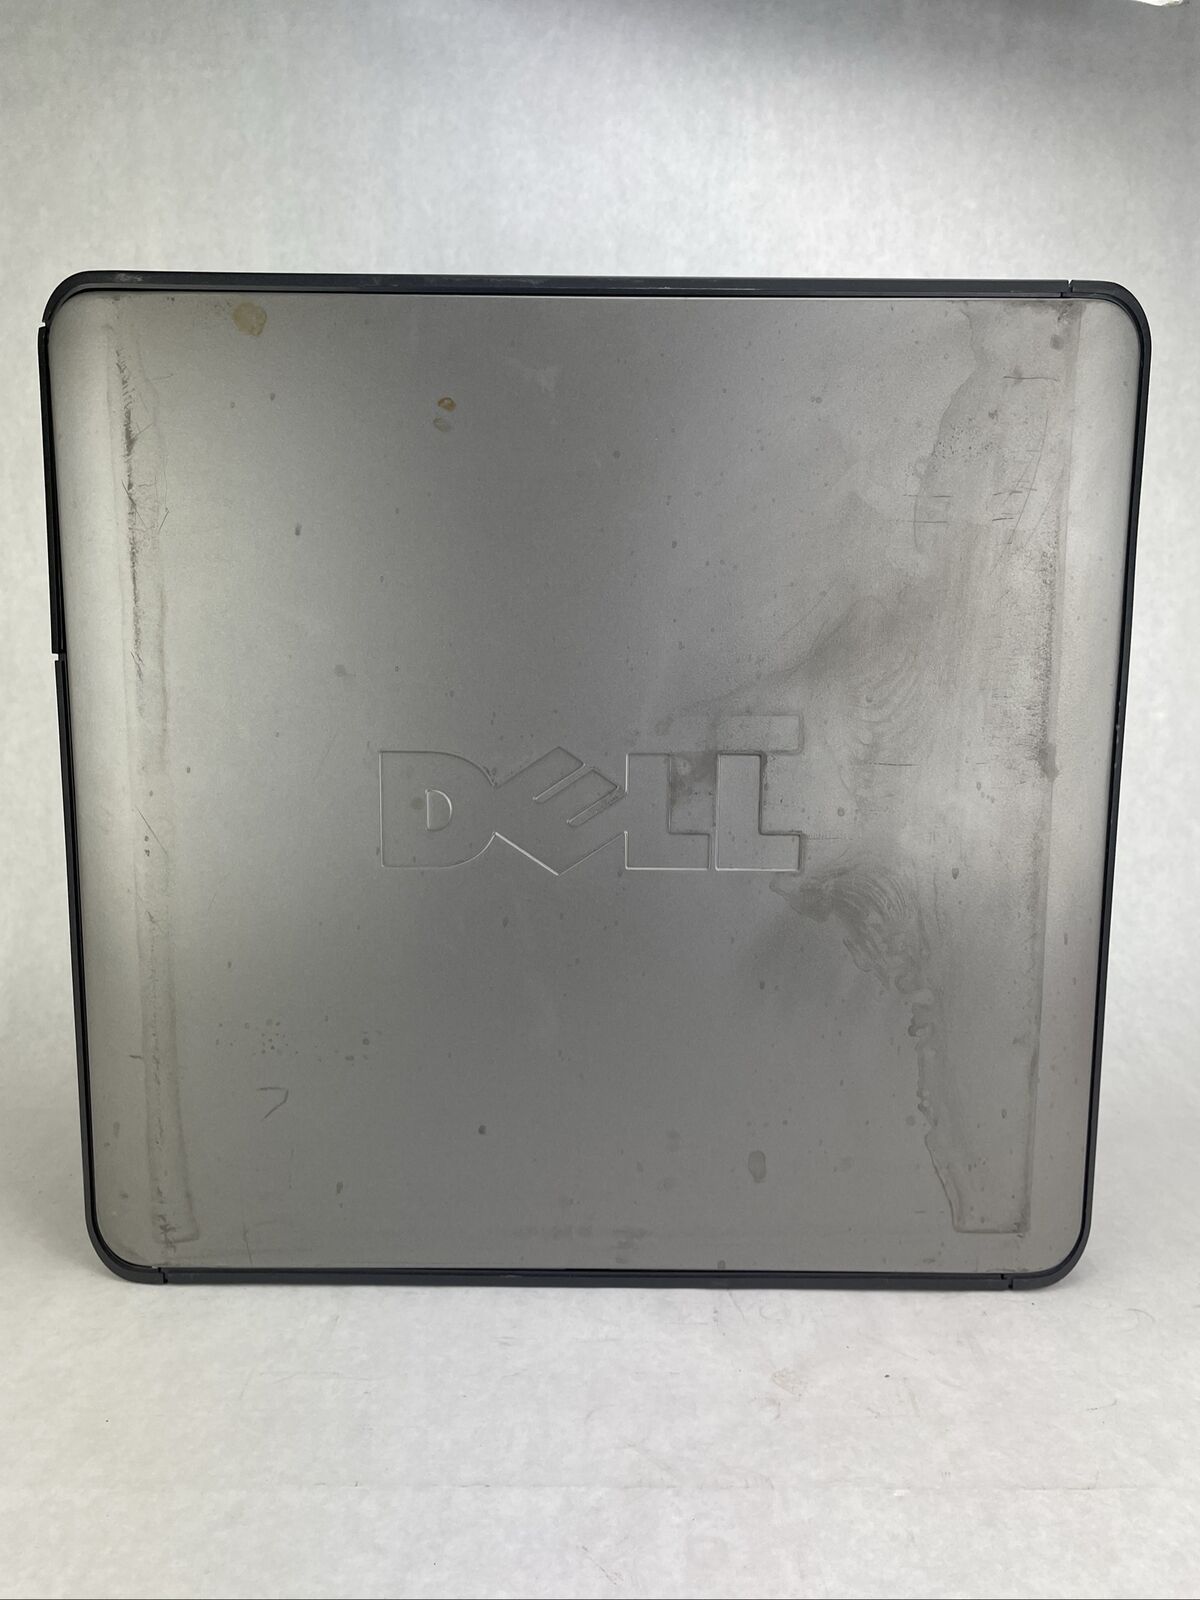 Dell Optiplex GX620 MT Intel Pentium D 2.8GHz 2GB RAM No HDD No OS